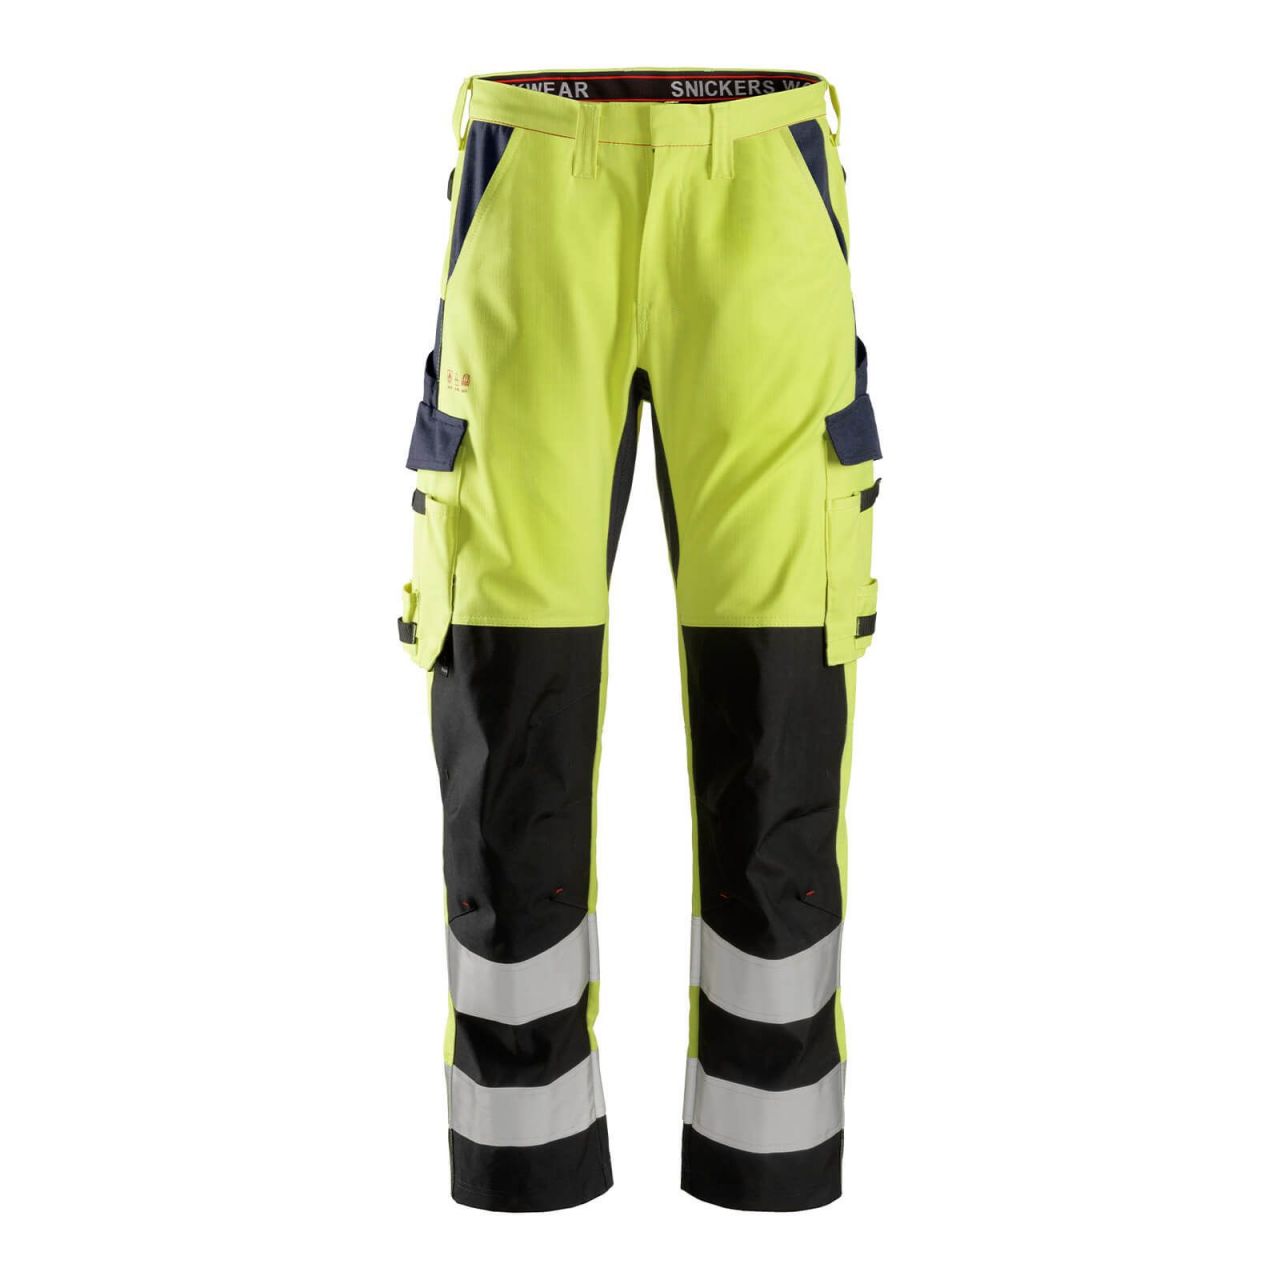 6364 Pantalones largos de trabajo de alta visibilidad clase 2 con espinilla reforzada ProtecWork amarillo-azul marino talla 156